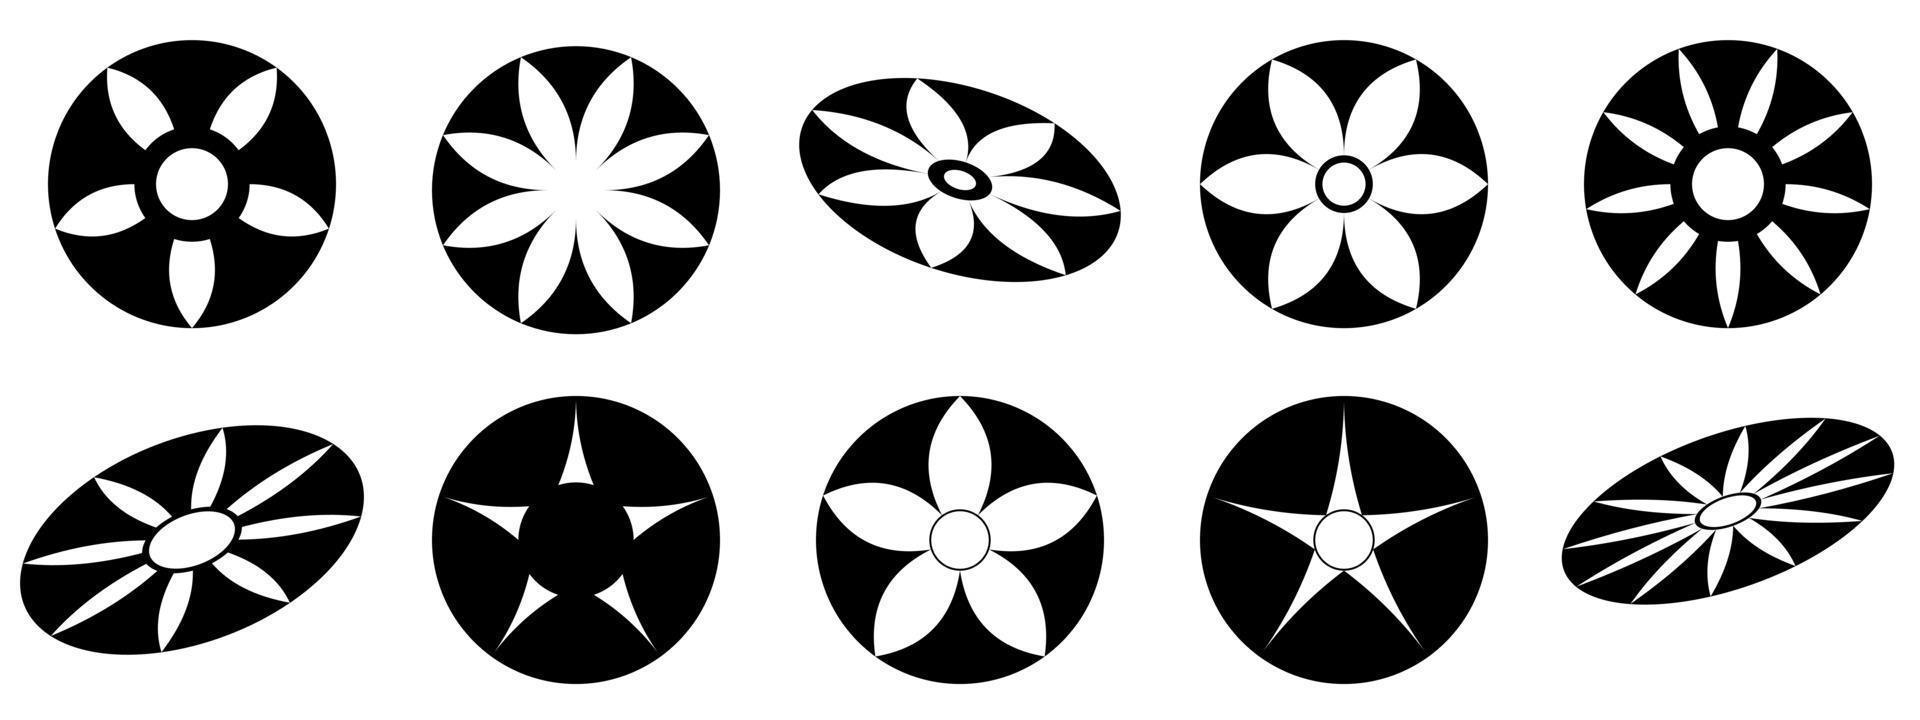 Sternblumenformikone für dekorative abstrakte Hintergrundvektorillustration vektor